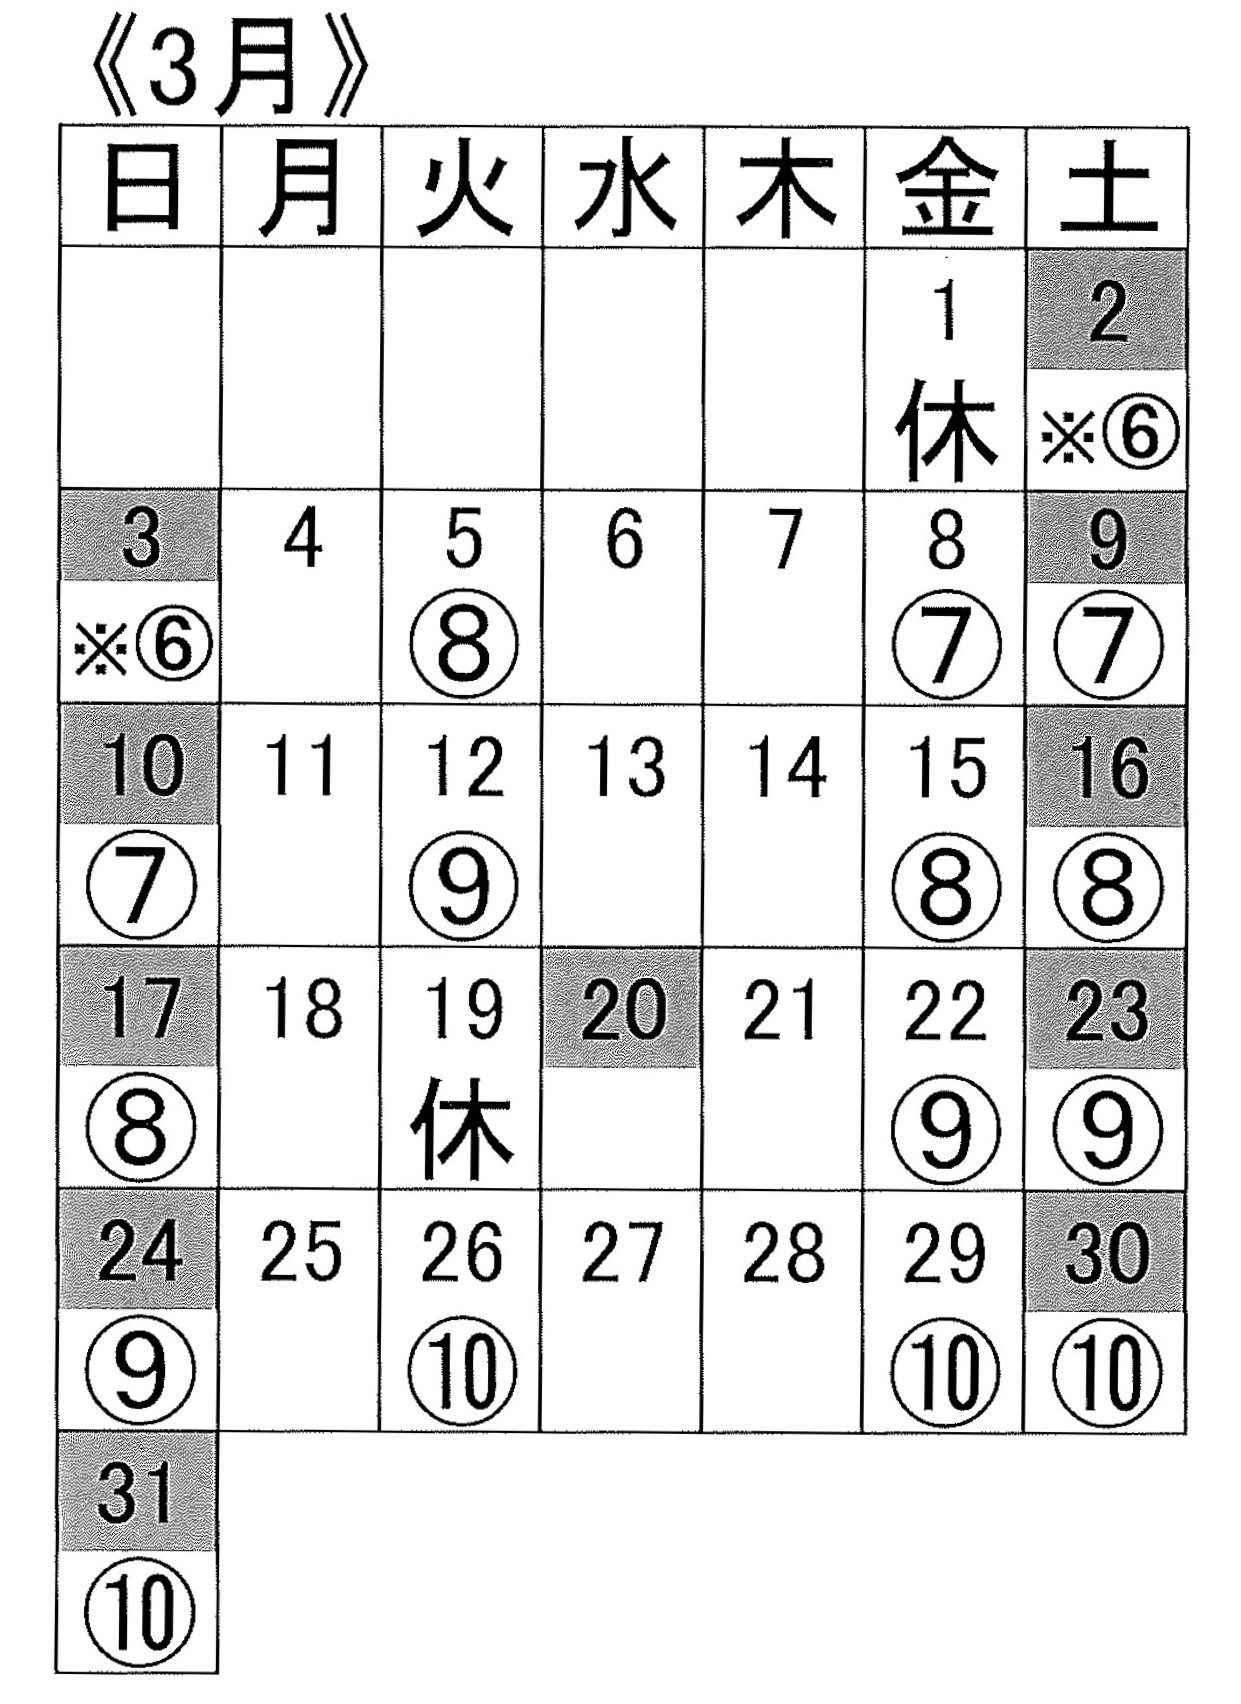 小野クラス3月のスケジュール